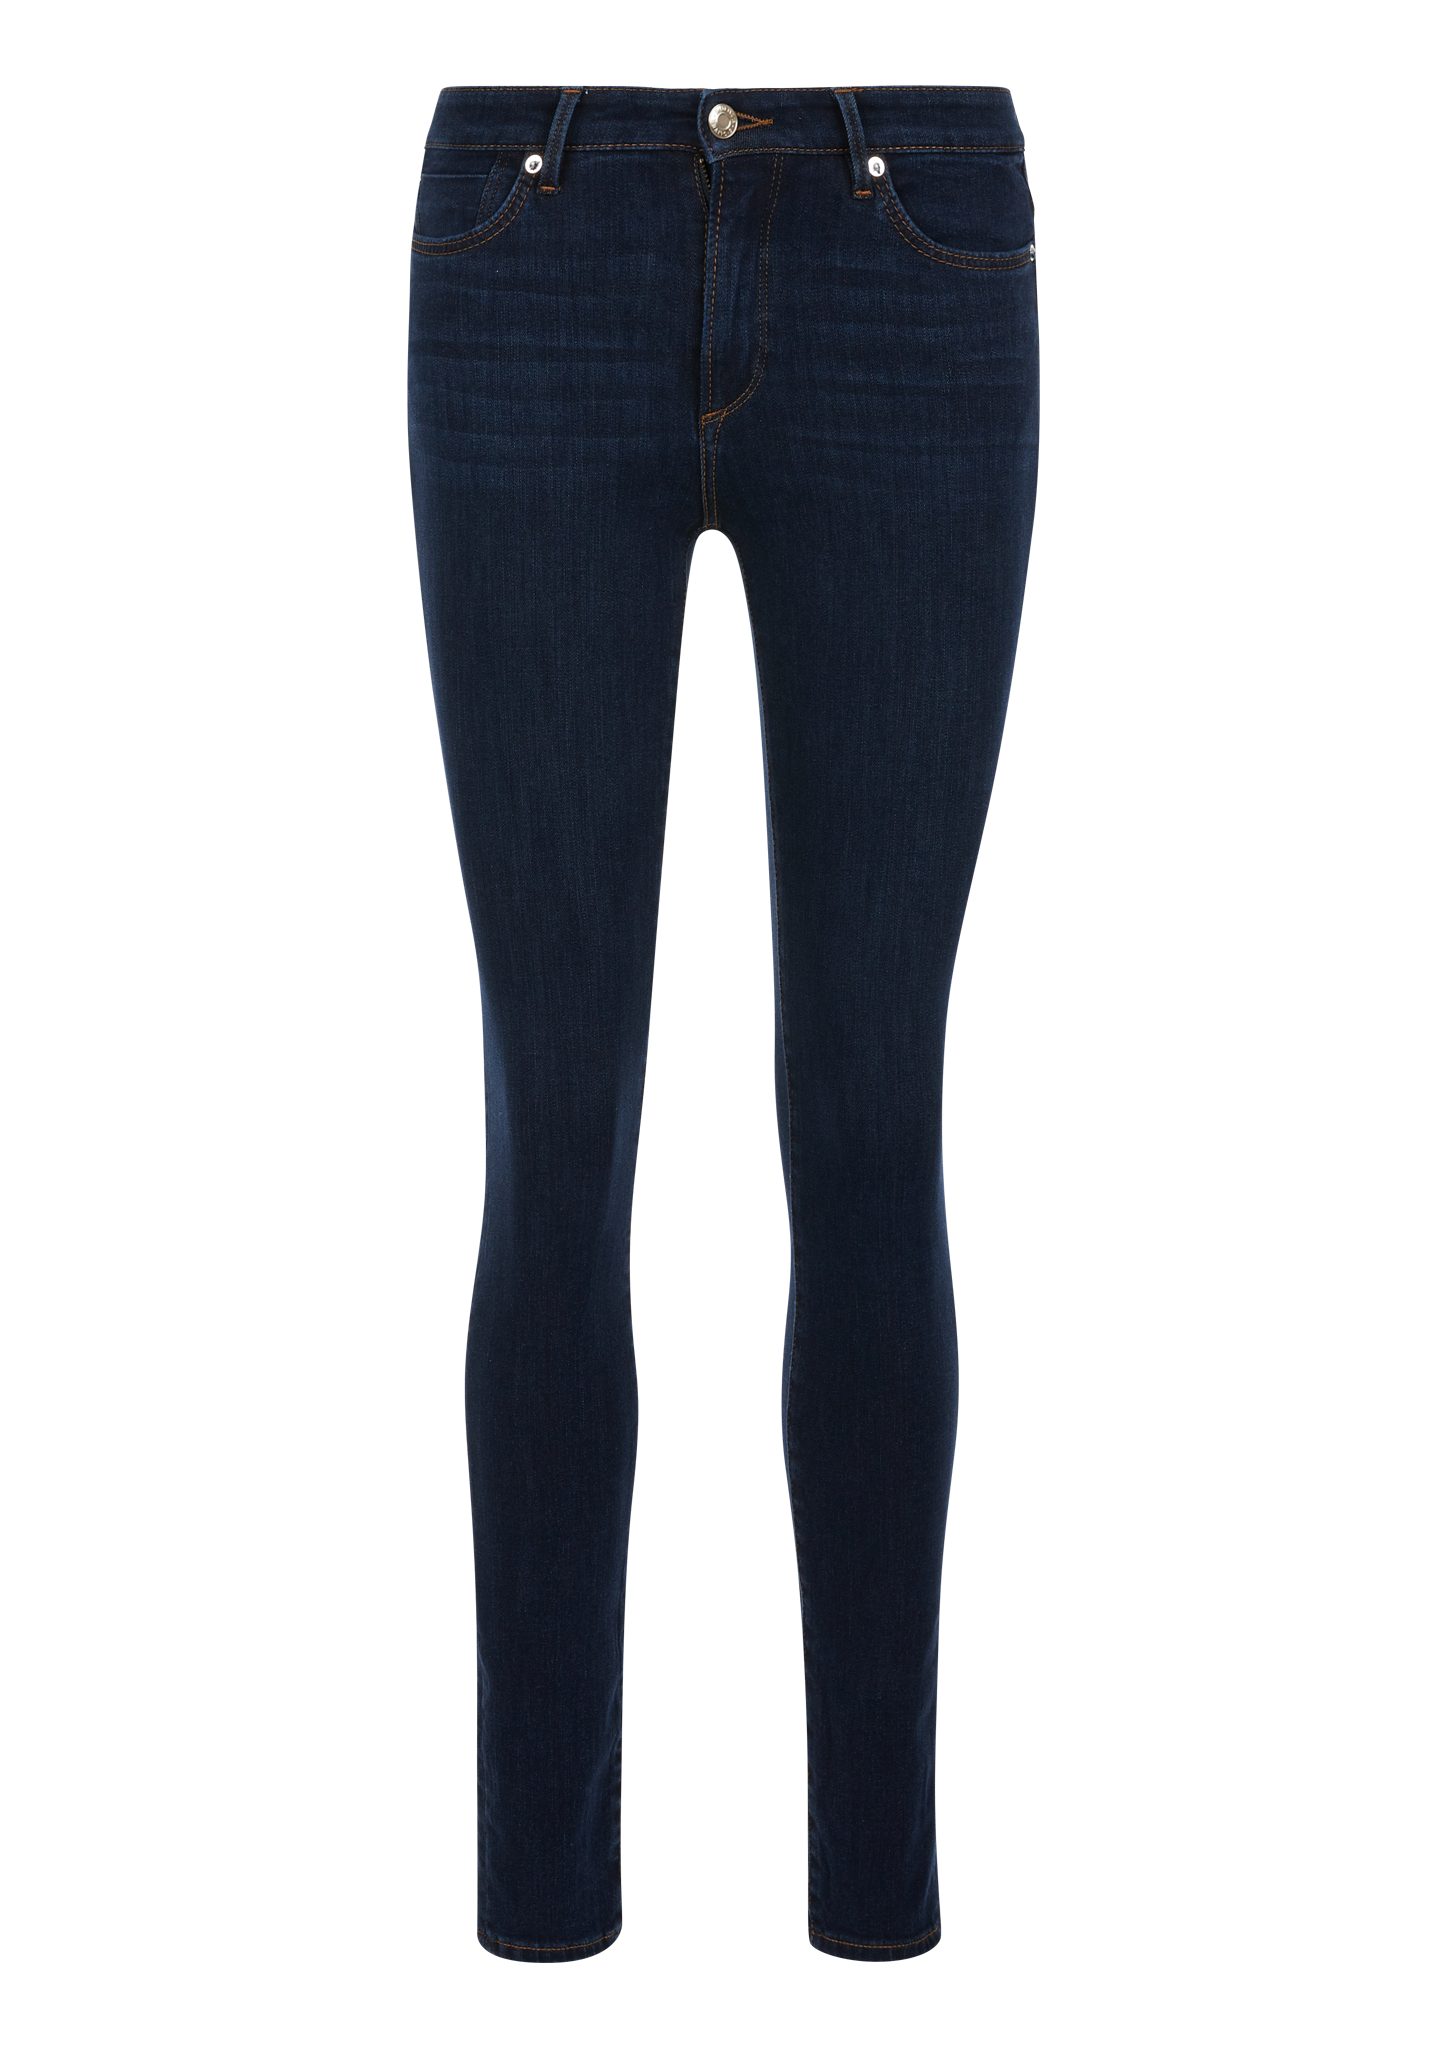 s.Oliver 5-Pocket-Jeans Jeans Izabell / Skinny Fit / Mid Rise / Skinny Leg Label-Patch dark blue